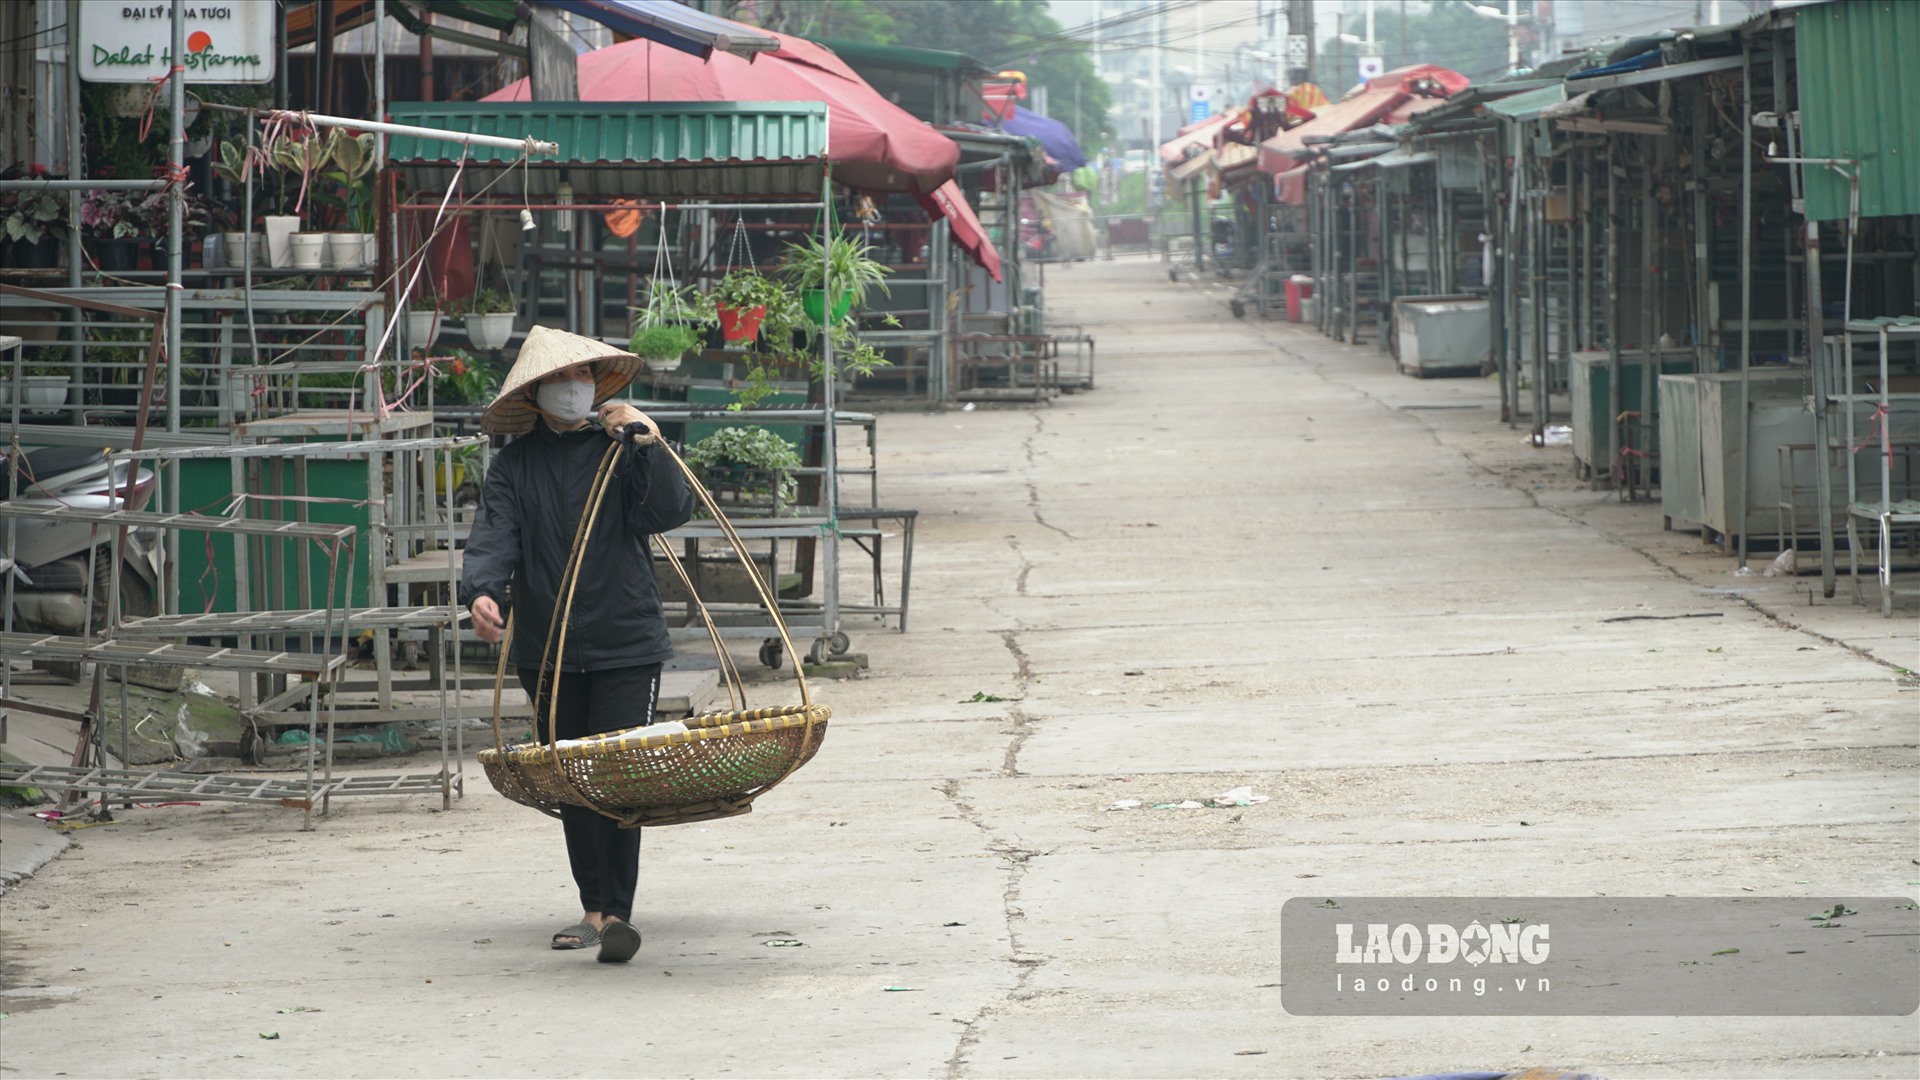 Không còn cảnh buôn bán tấp nập giữa những người yêu hoa, làm công việc liên quan đến hoa ở Hà Nội và các vùng lân cận. Nơi đây im ắng